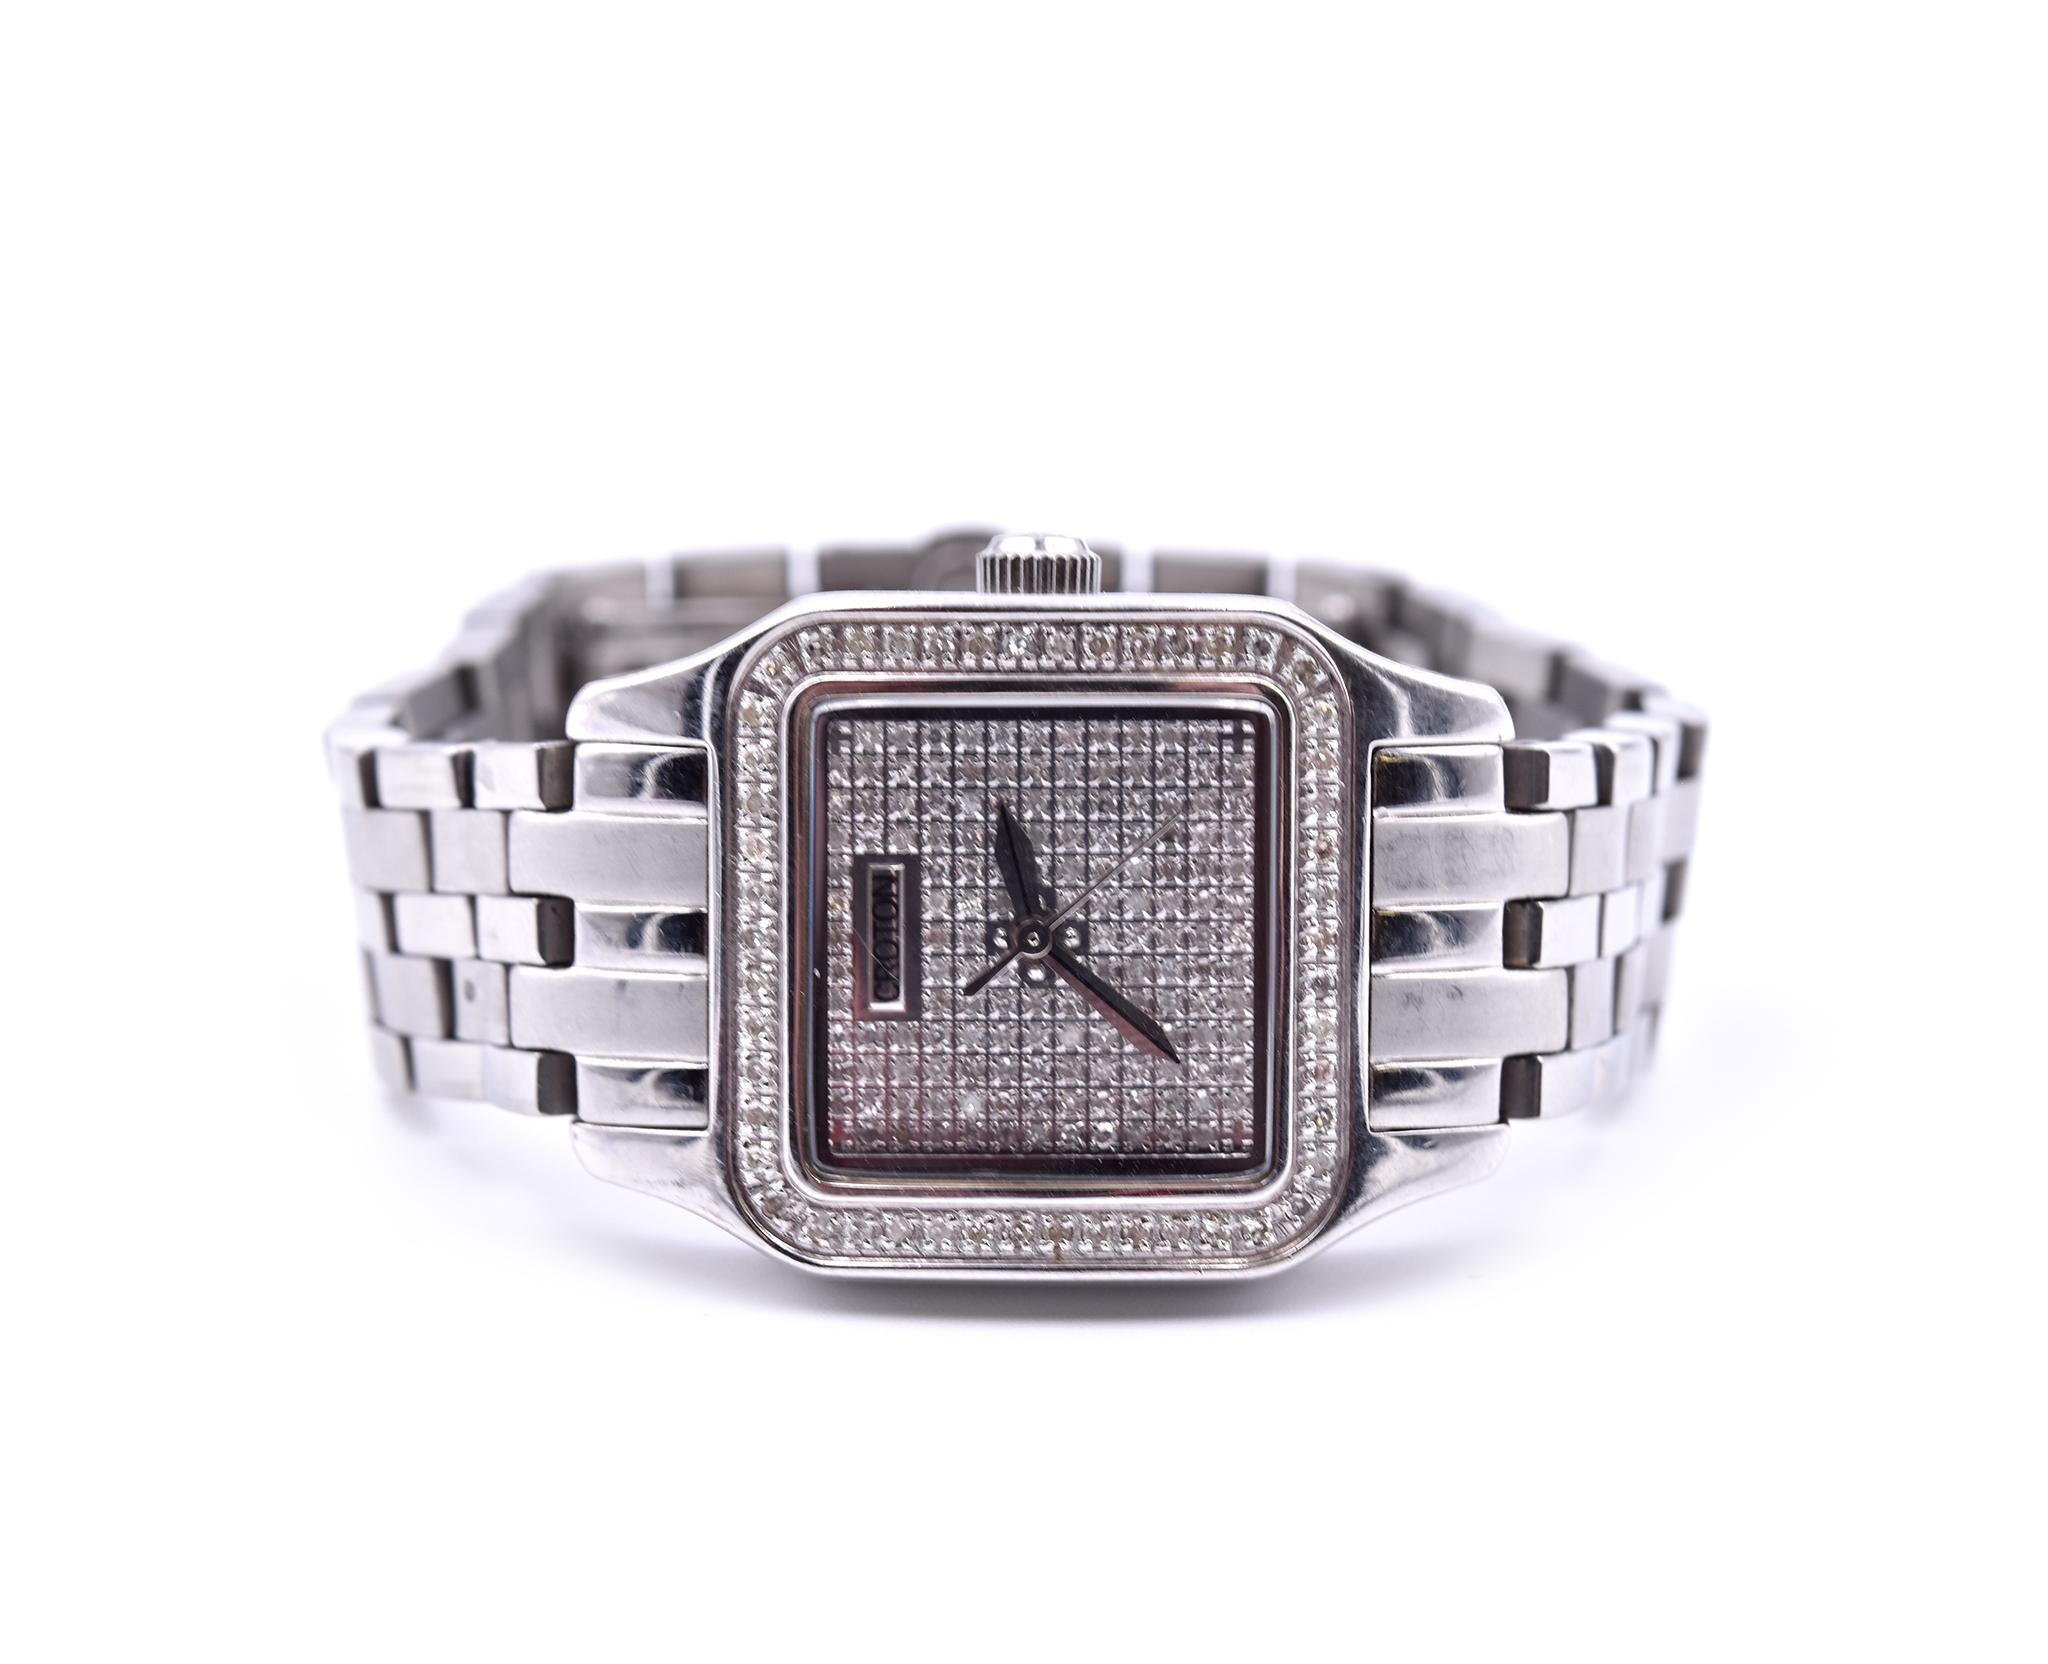 croton diamond watch price